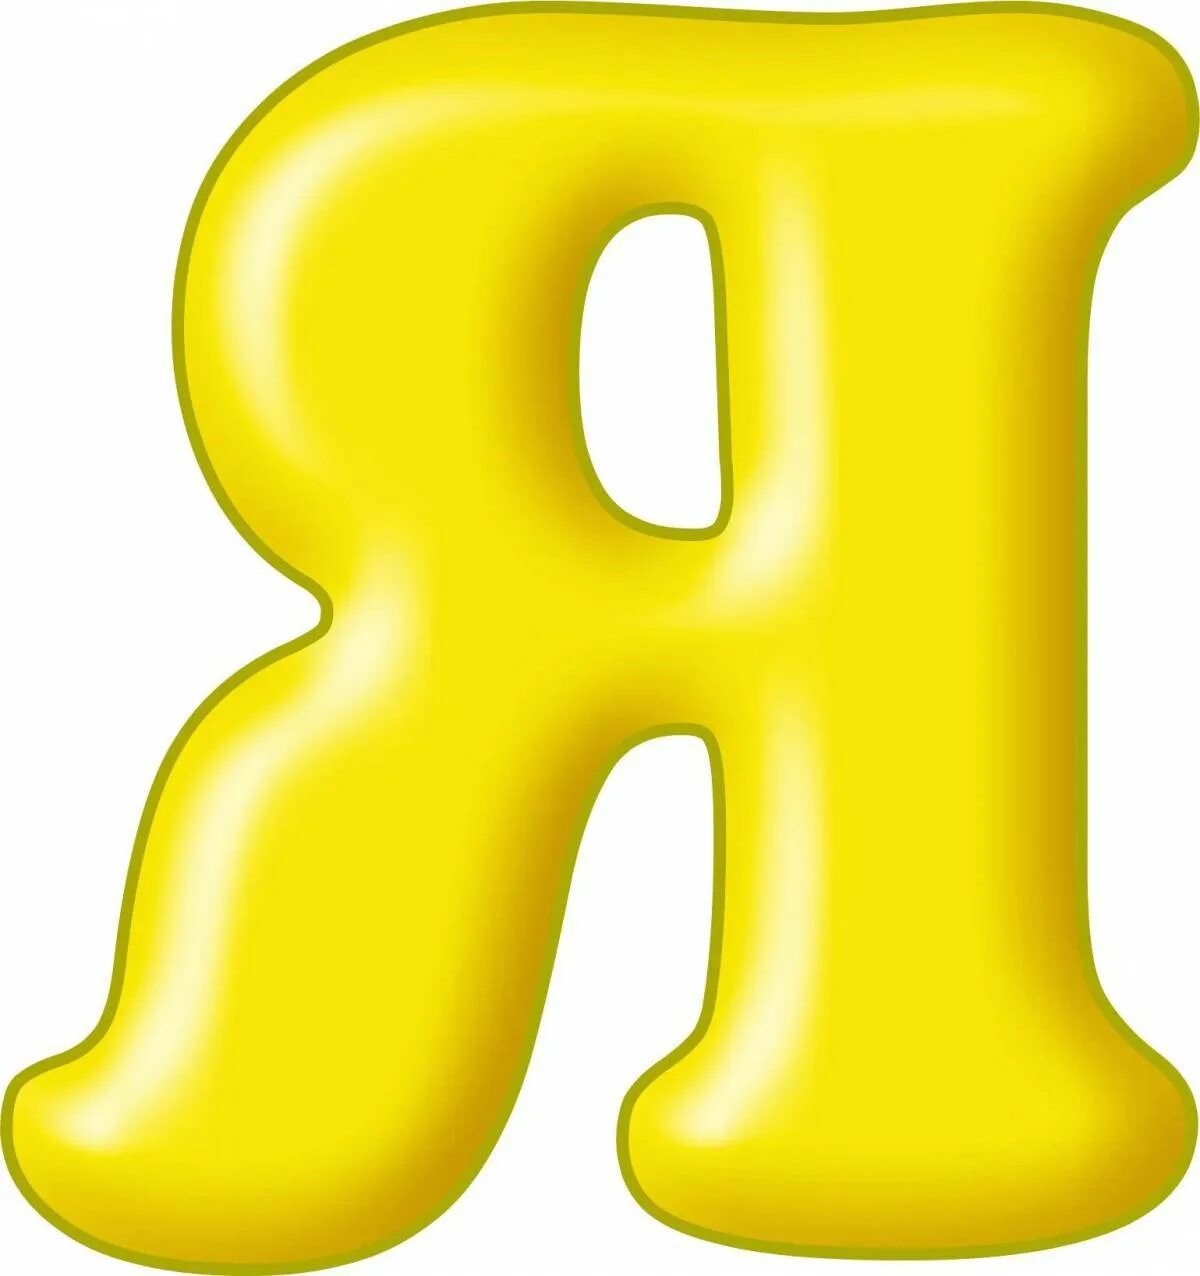 Напишите по отдельности. Цветные буквы. Алфавит и буквы. Буква я желтая. Разноцветные буквы.